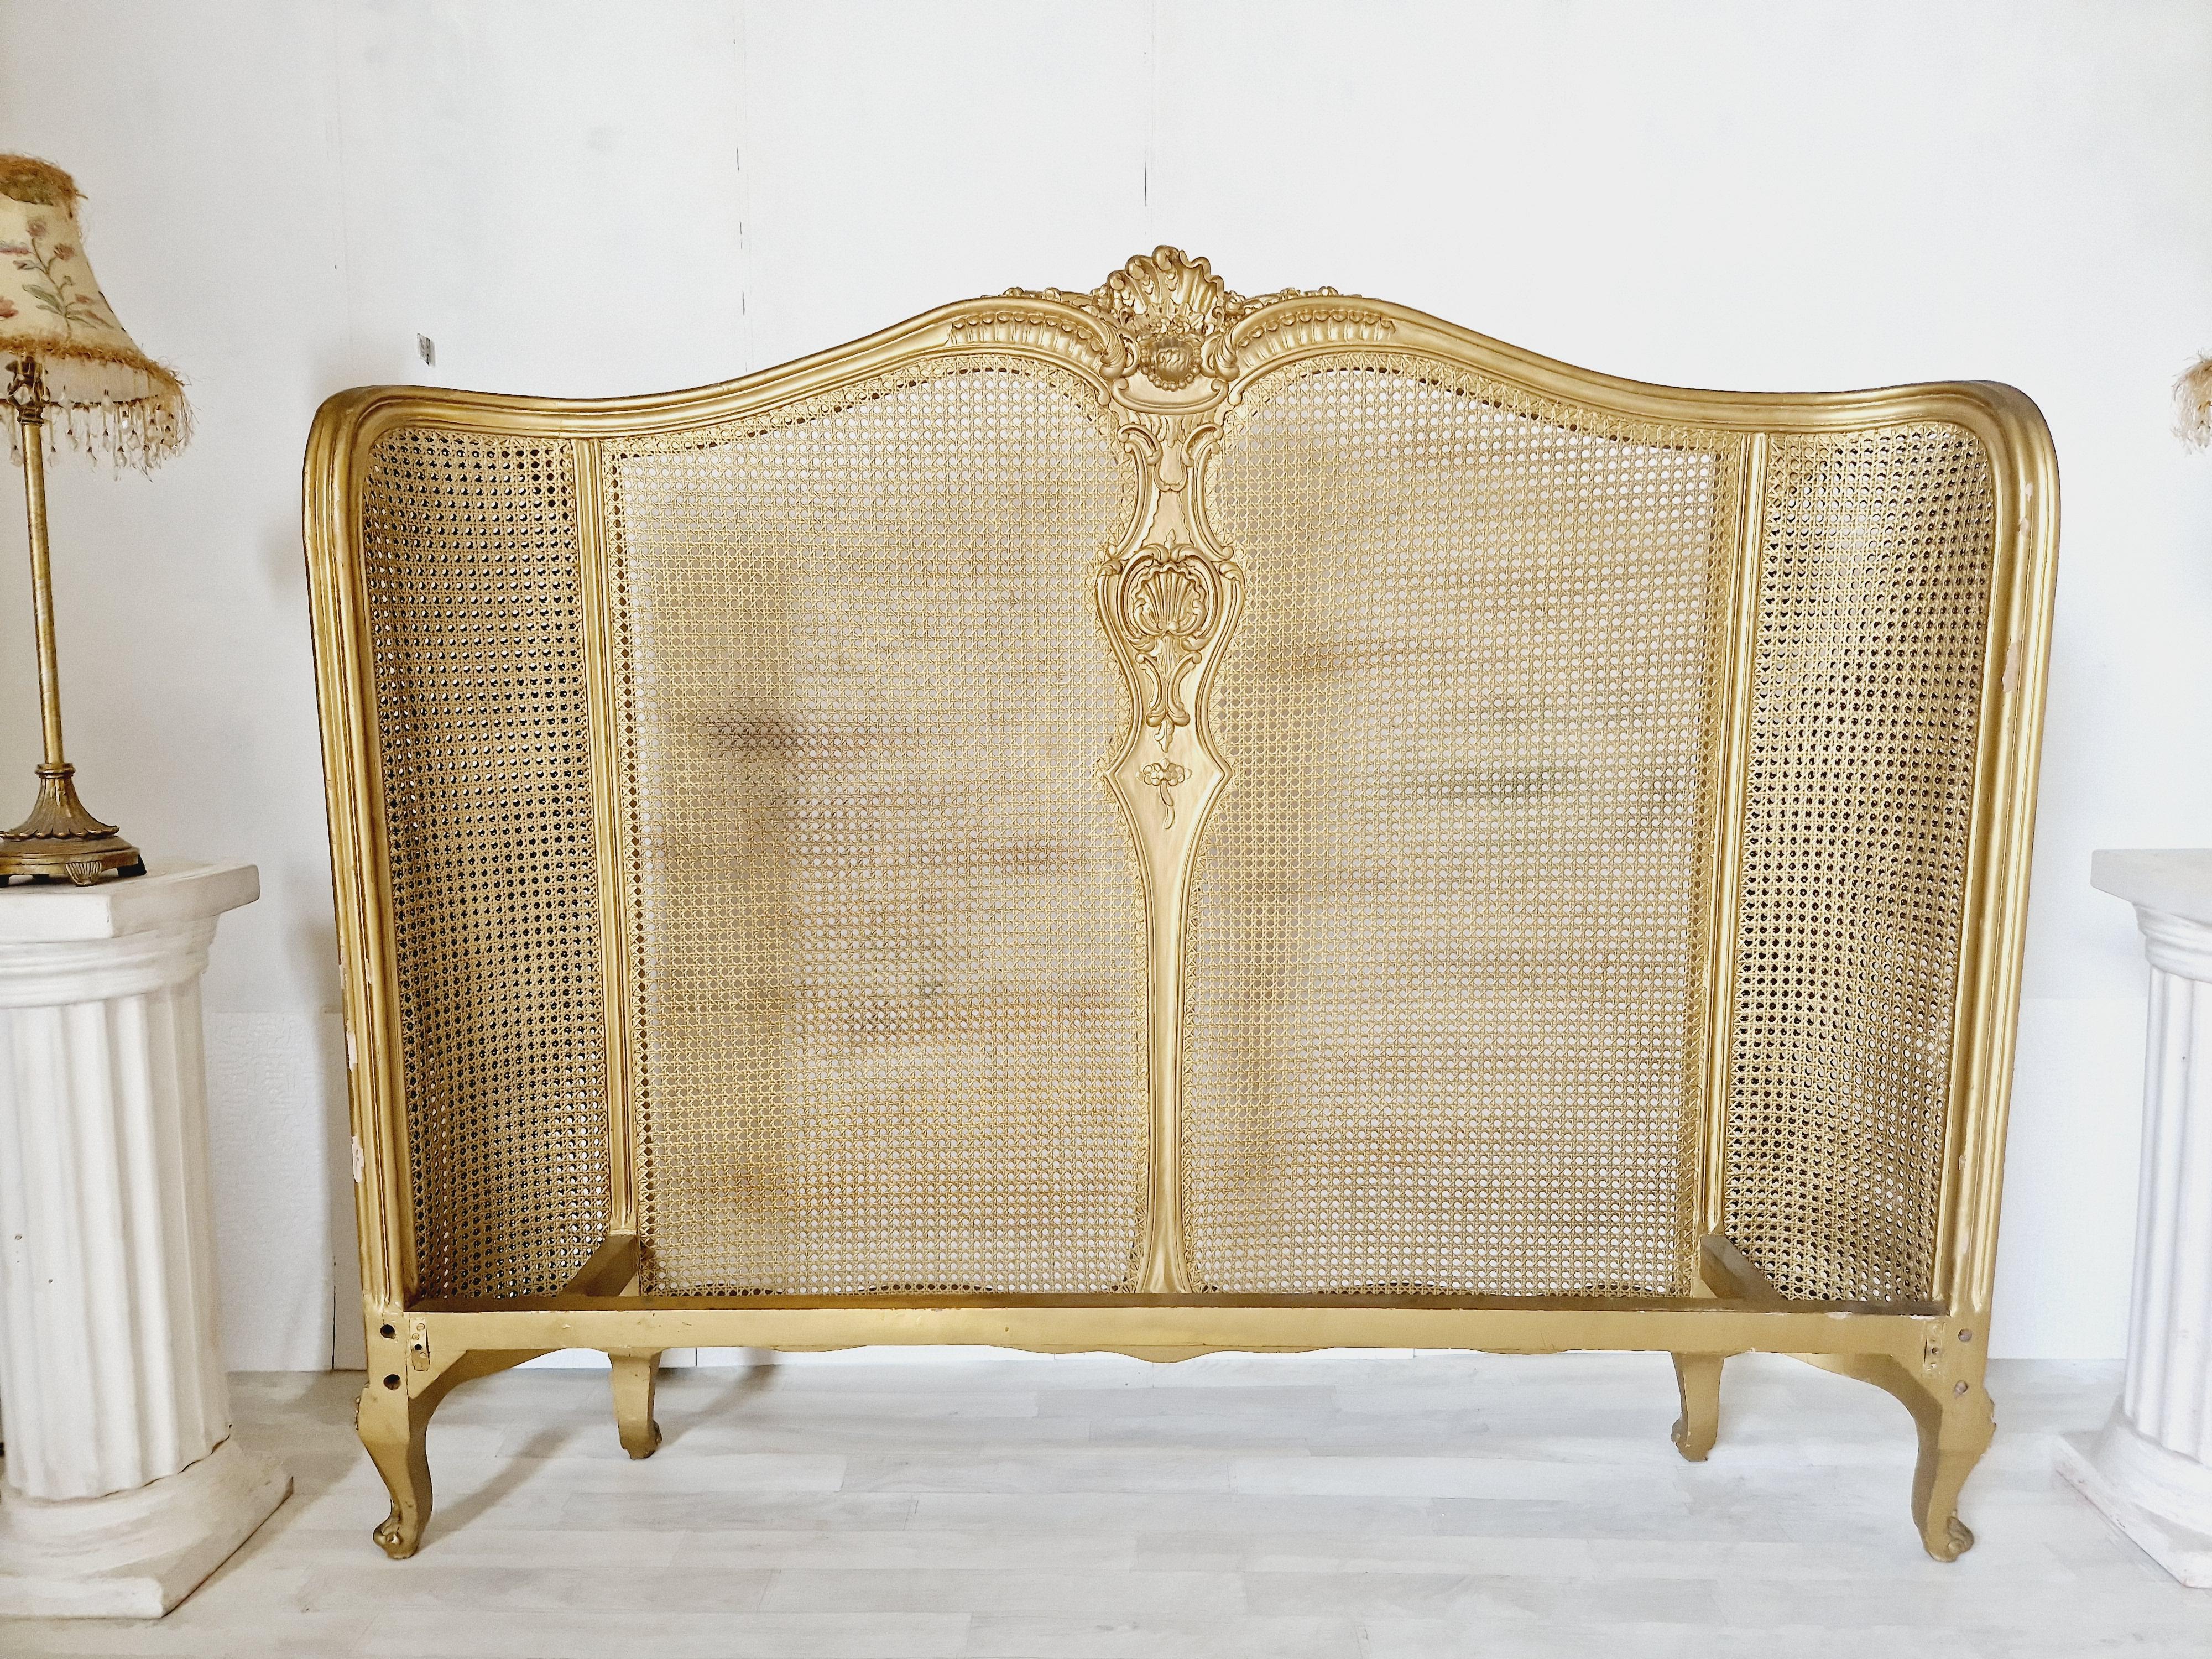 Ce lit en rotin français de style Louis XV est une belle addition à toute chambre à coucher. Le cadre de lit est fabriqué en bois de haute qualité et présente des sculptures complexes qui créent un effet visuel époustouflant. La finition laquée or